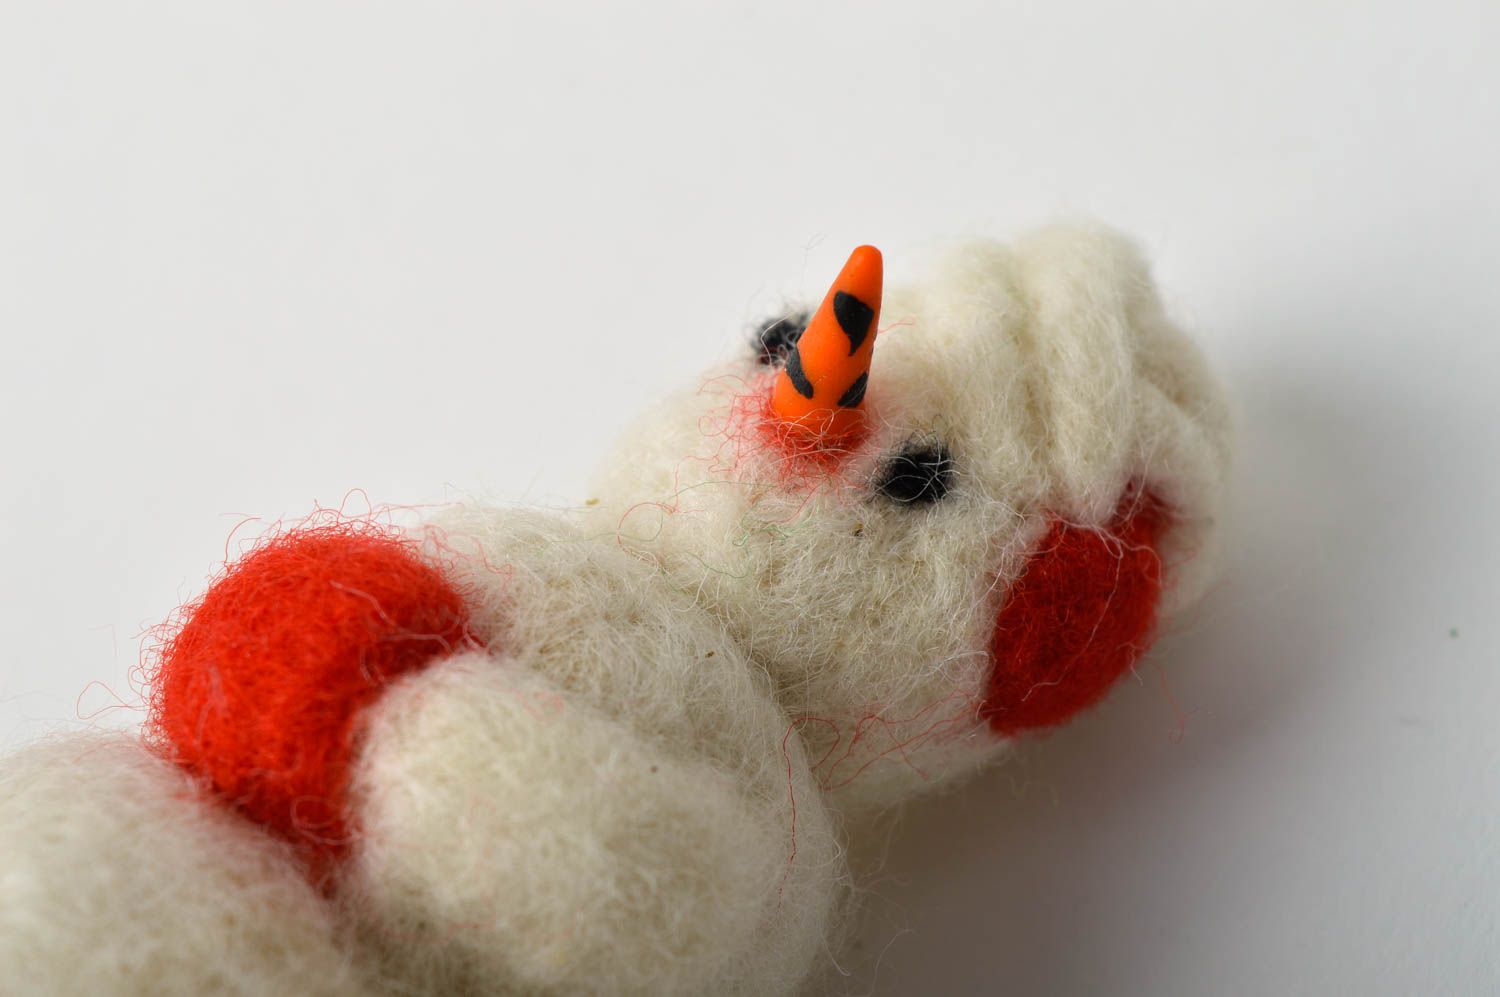 Juguete navideño hecho a mano de lana elemento decorativo regalo original foto 4